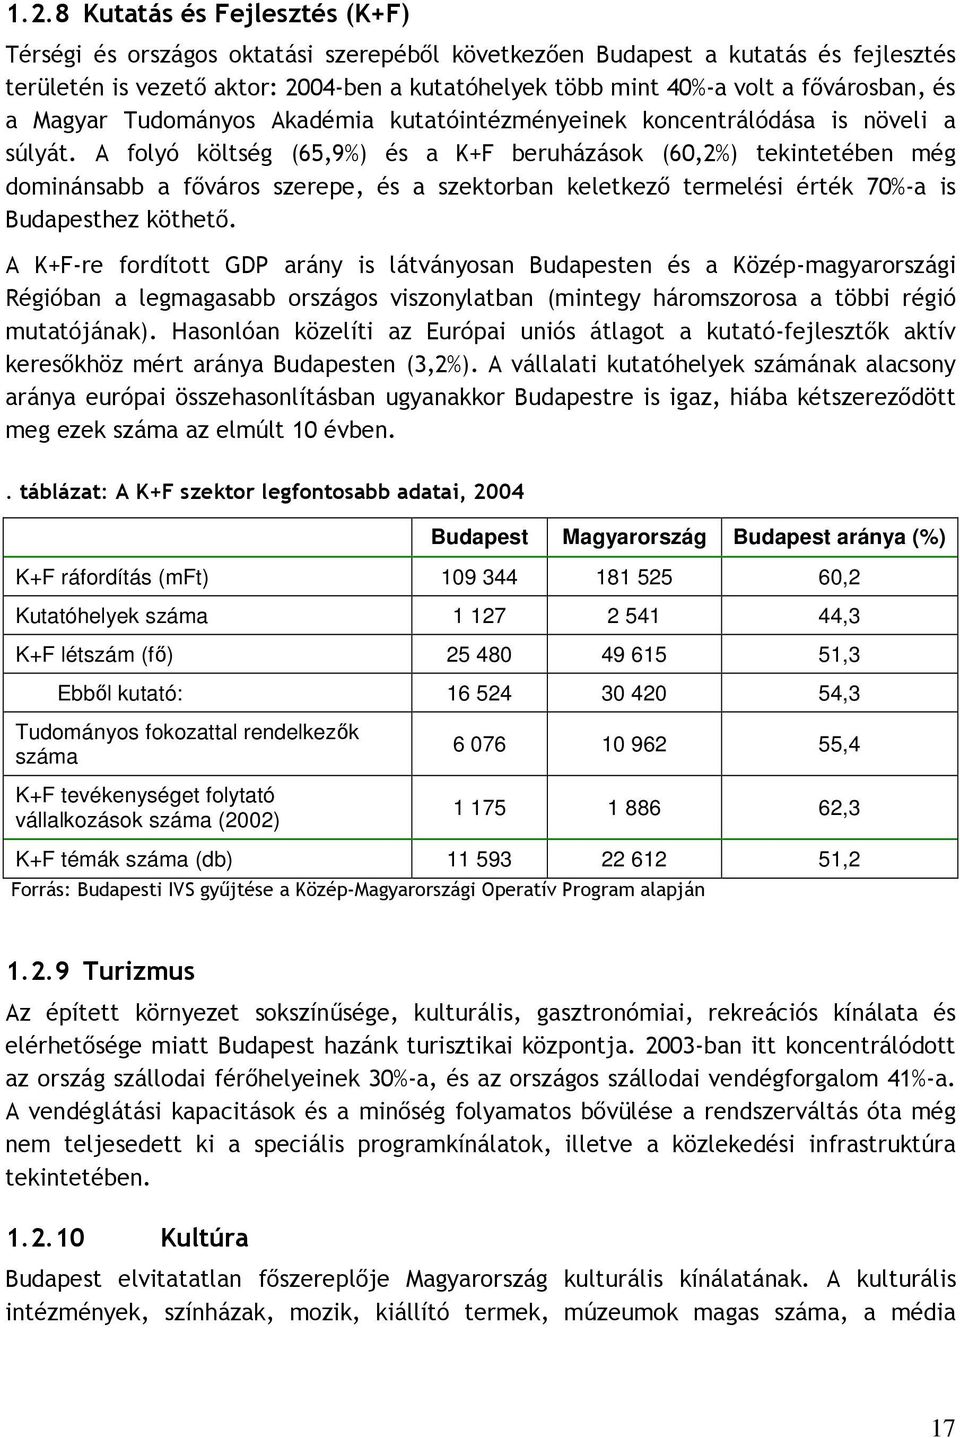 A folyó költség (65,9%) és a K+F beruházások (60,2%) tekintetében még dominánsabb a fıváros szerepe, és a szektorban keletkezı termelési érték 70%-a is Budapesthez köthetı.